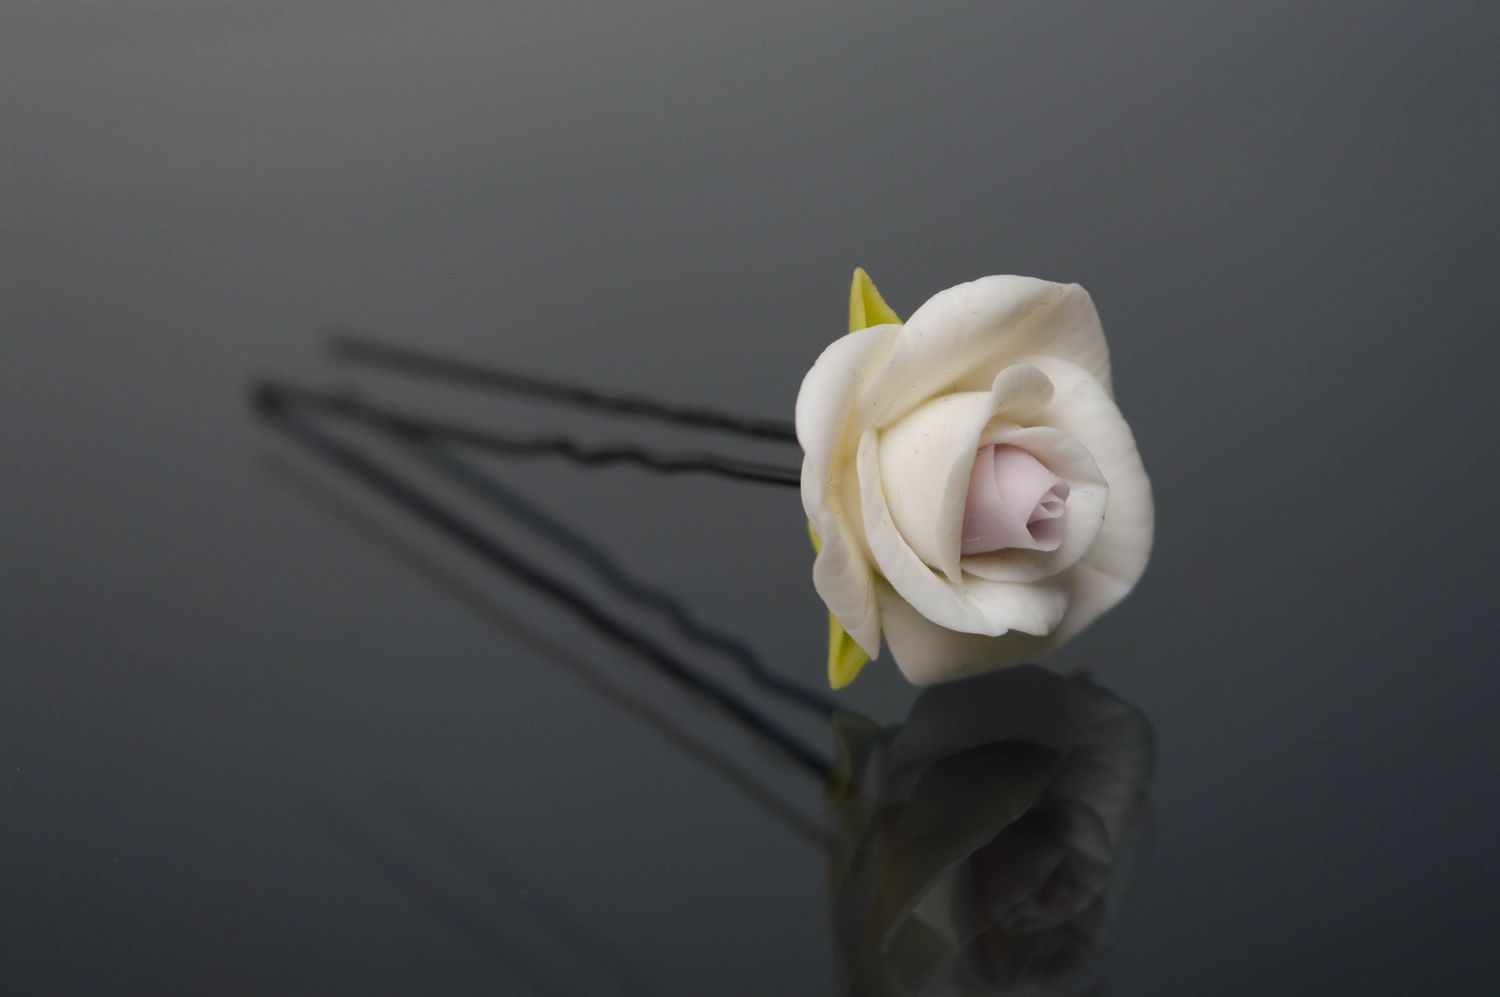 Épingle à cheveux en porcelaine froide Rose blanche photo 1